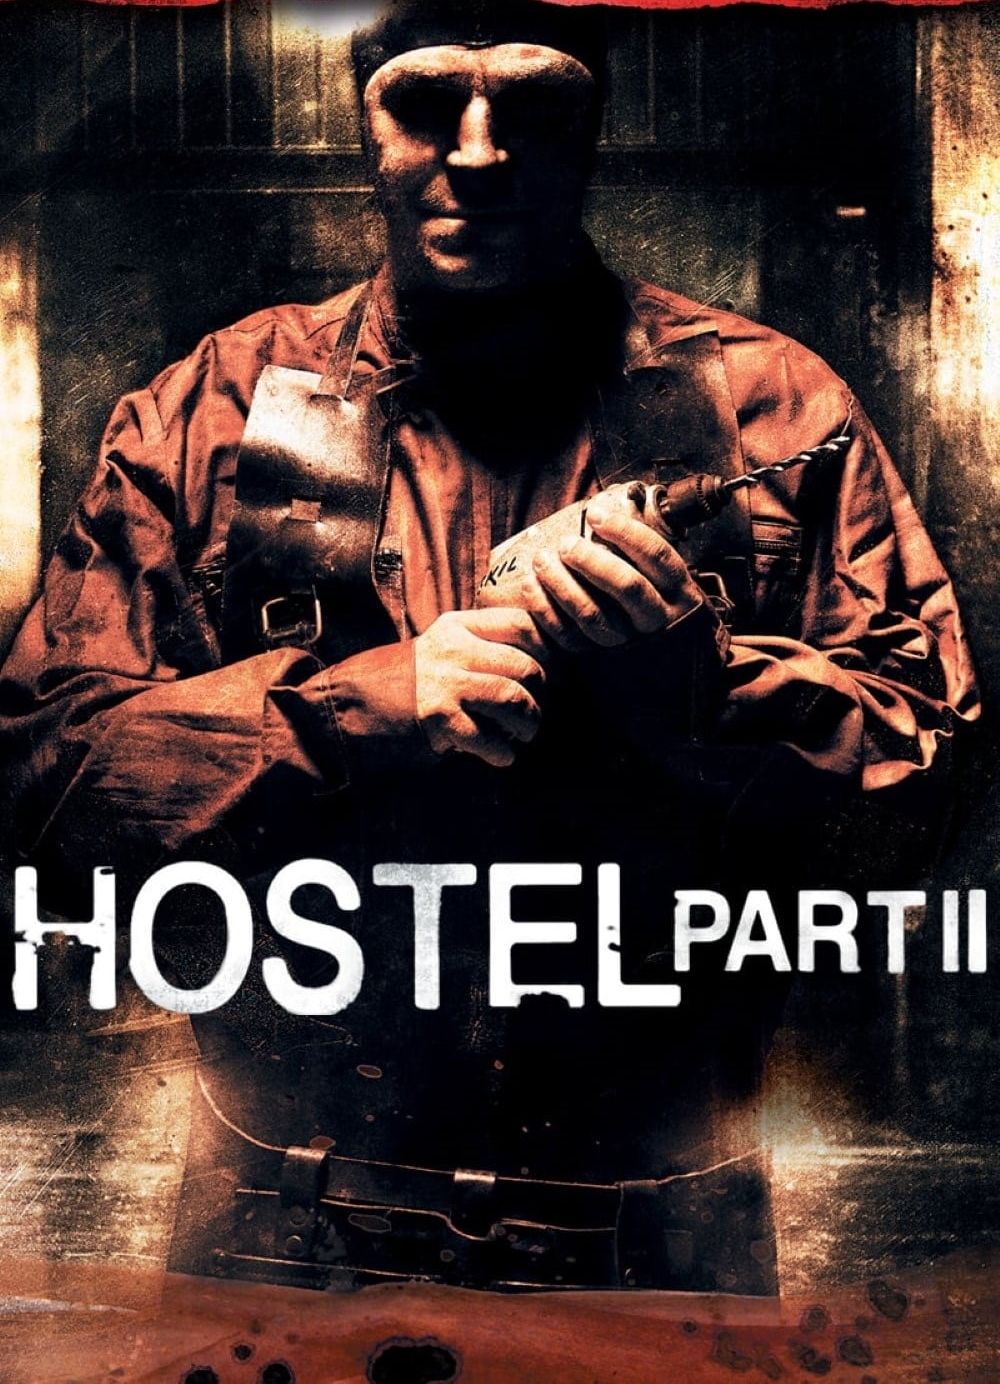 Hostel Part II (2007)